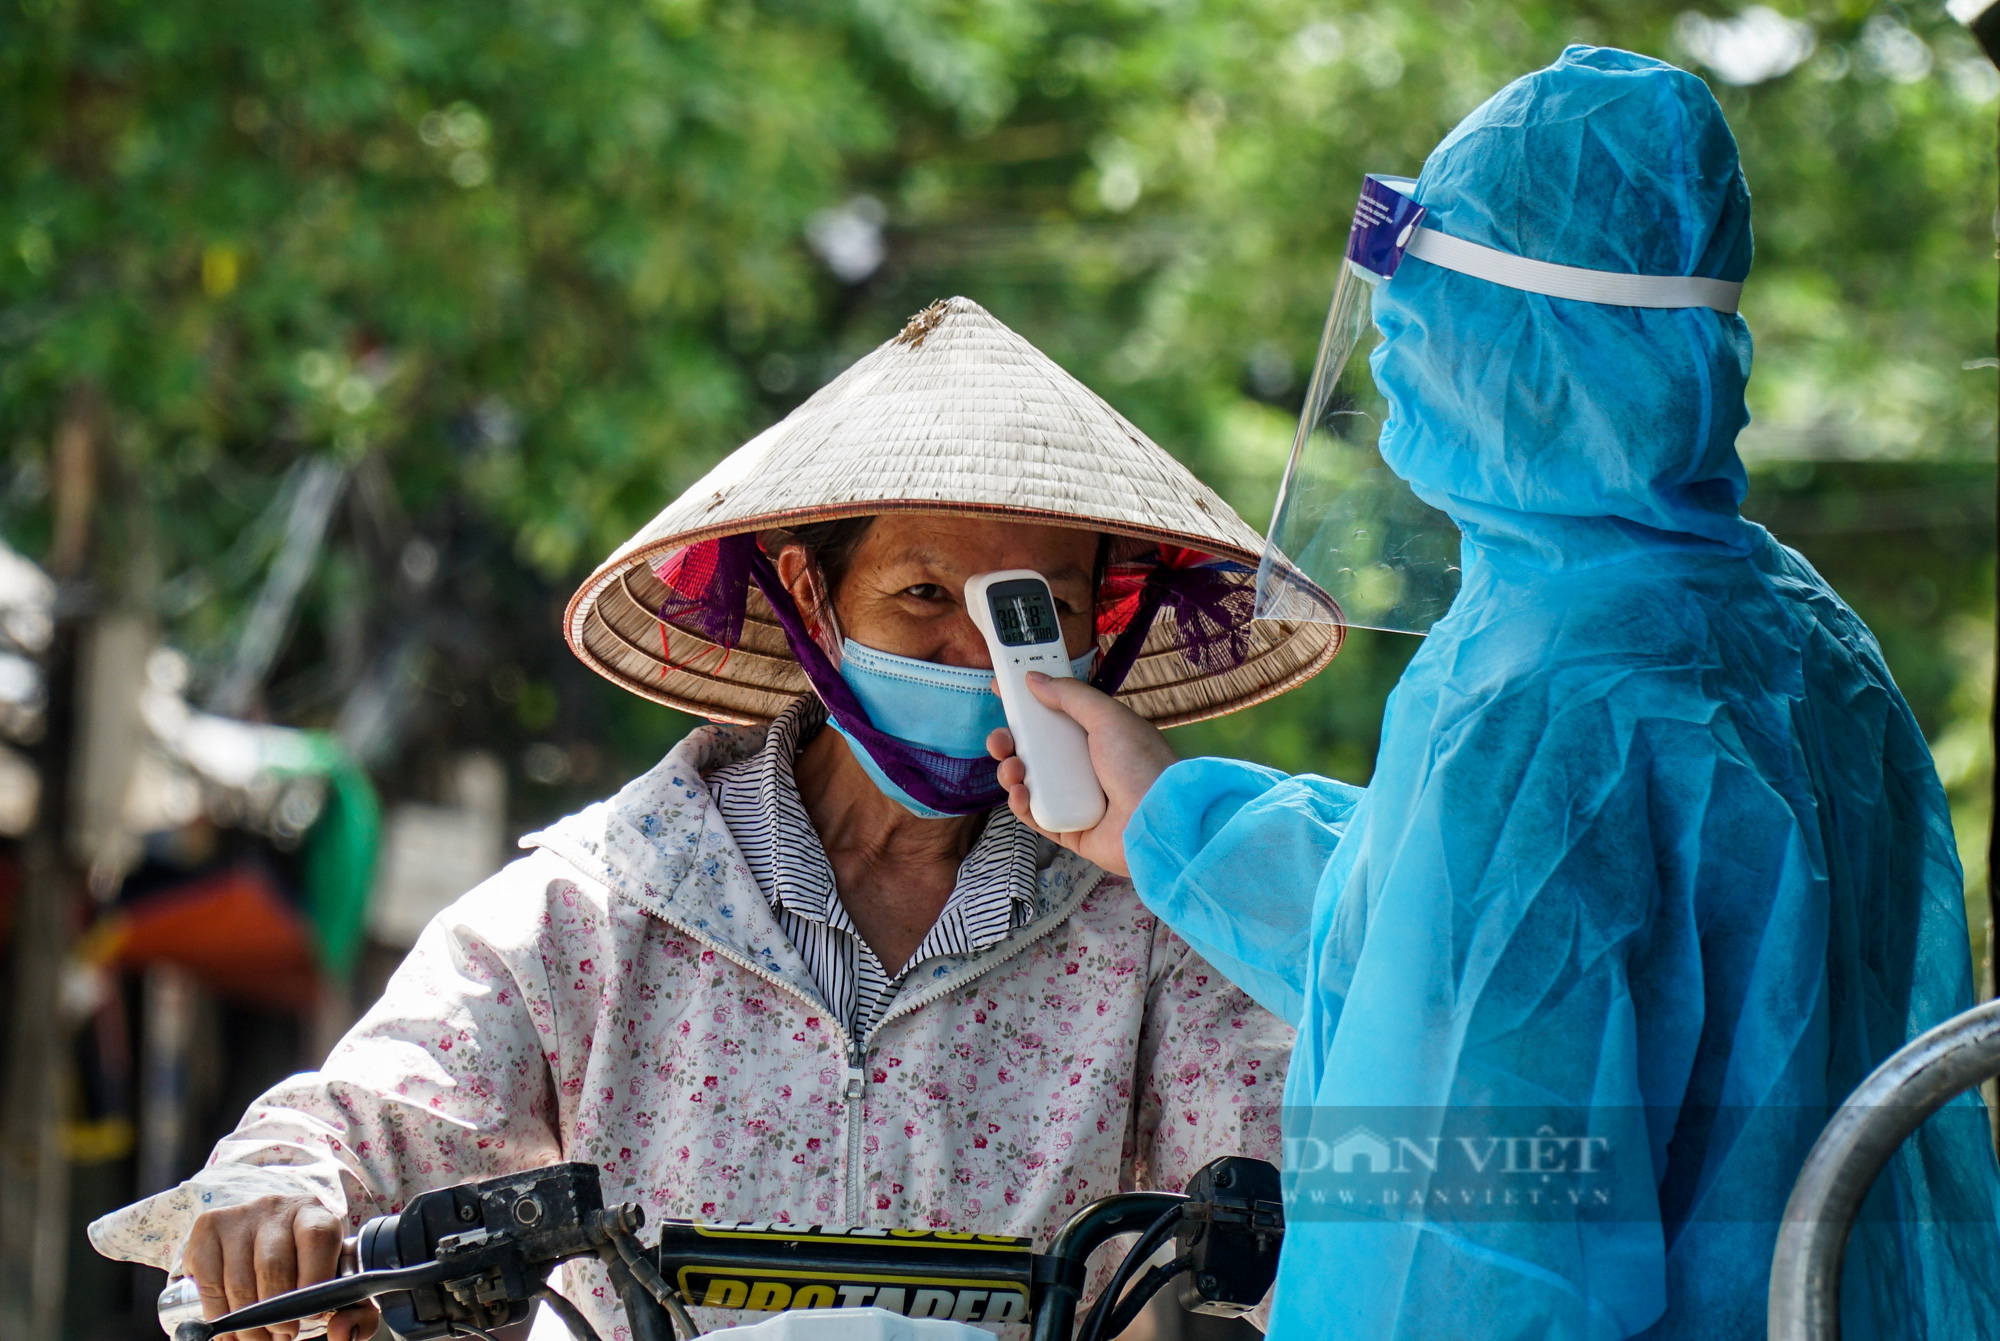 Toàn cảnh 1 thôn hơn 2.000 dân của Hà Nội bị cách ly y tế - Ảnh 3.